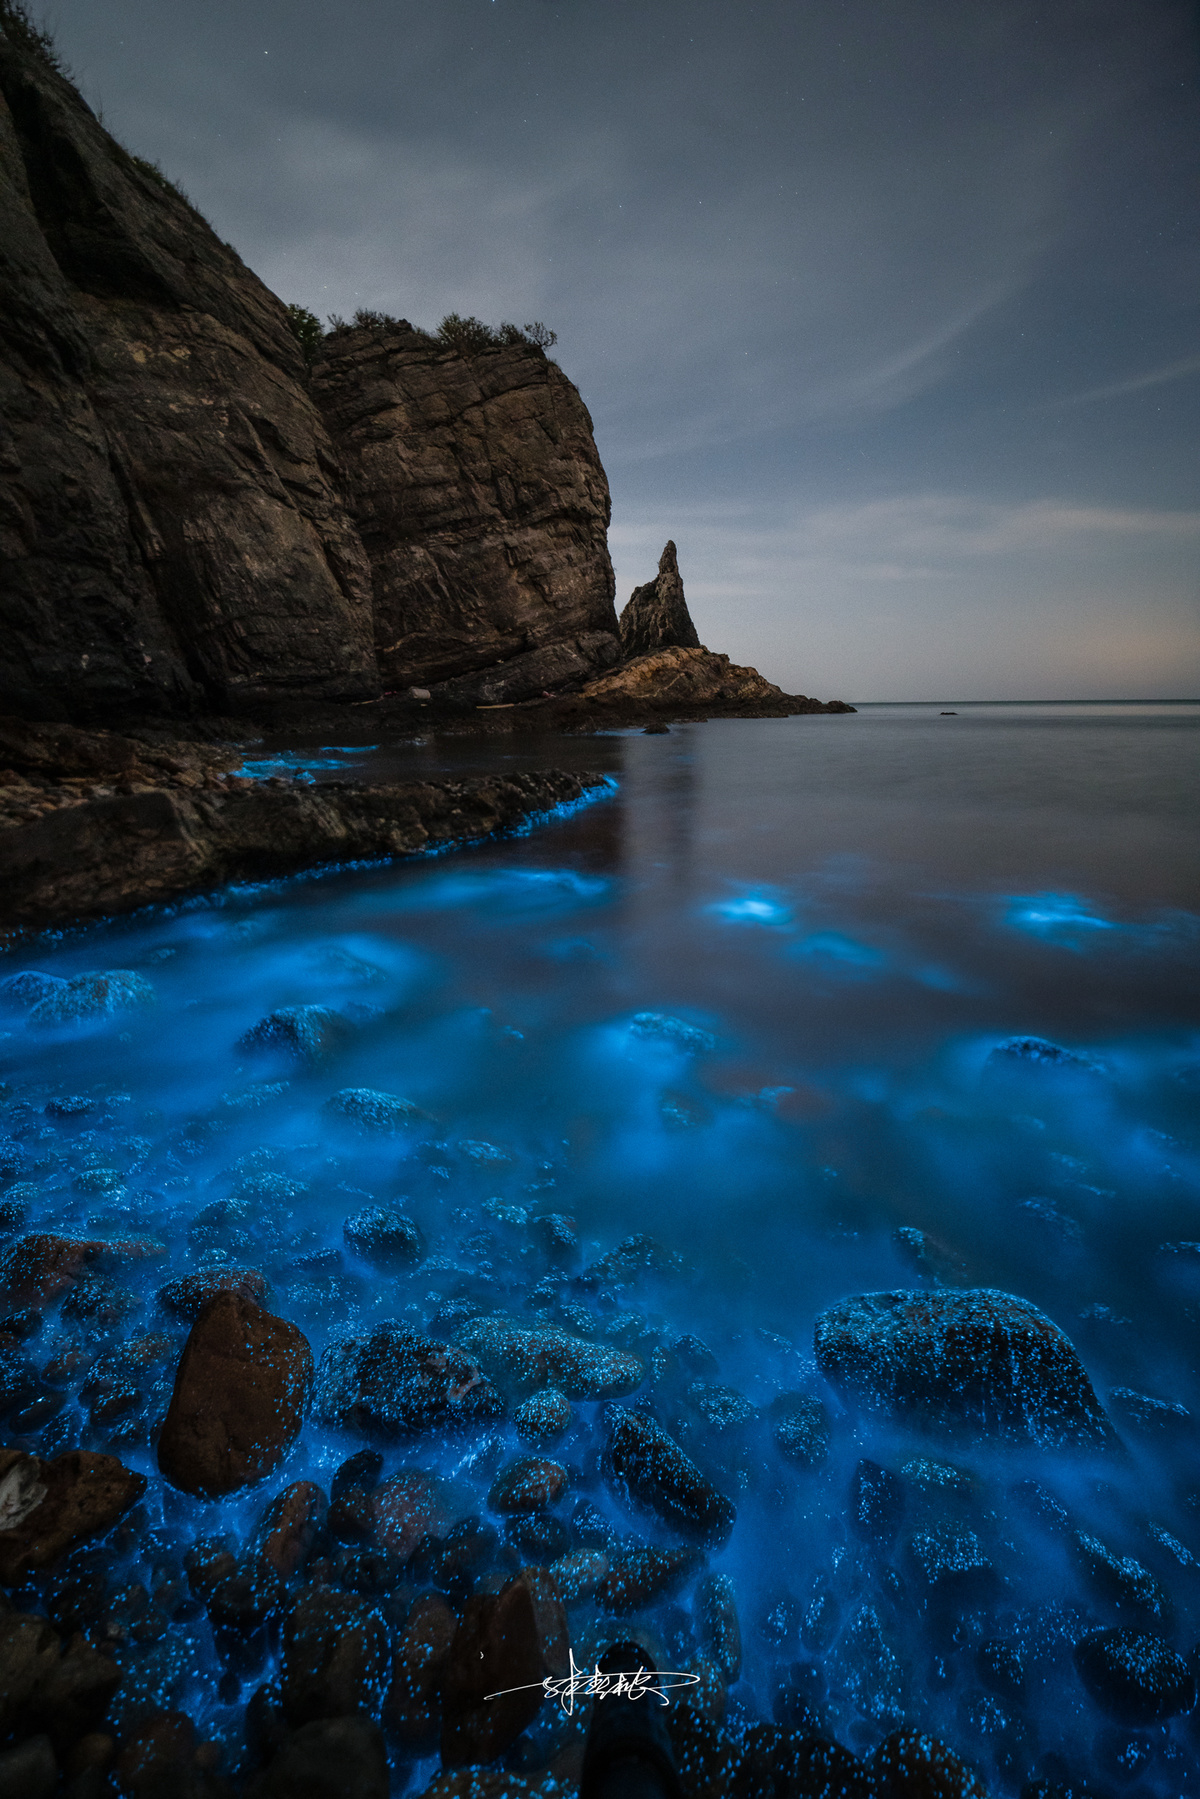 夜晚被蓝色光芒照亮的岩石海滩 前景中有一片水域。